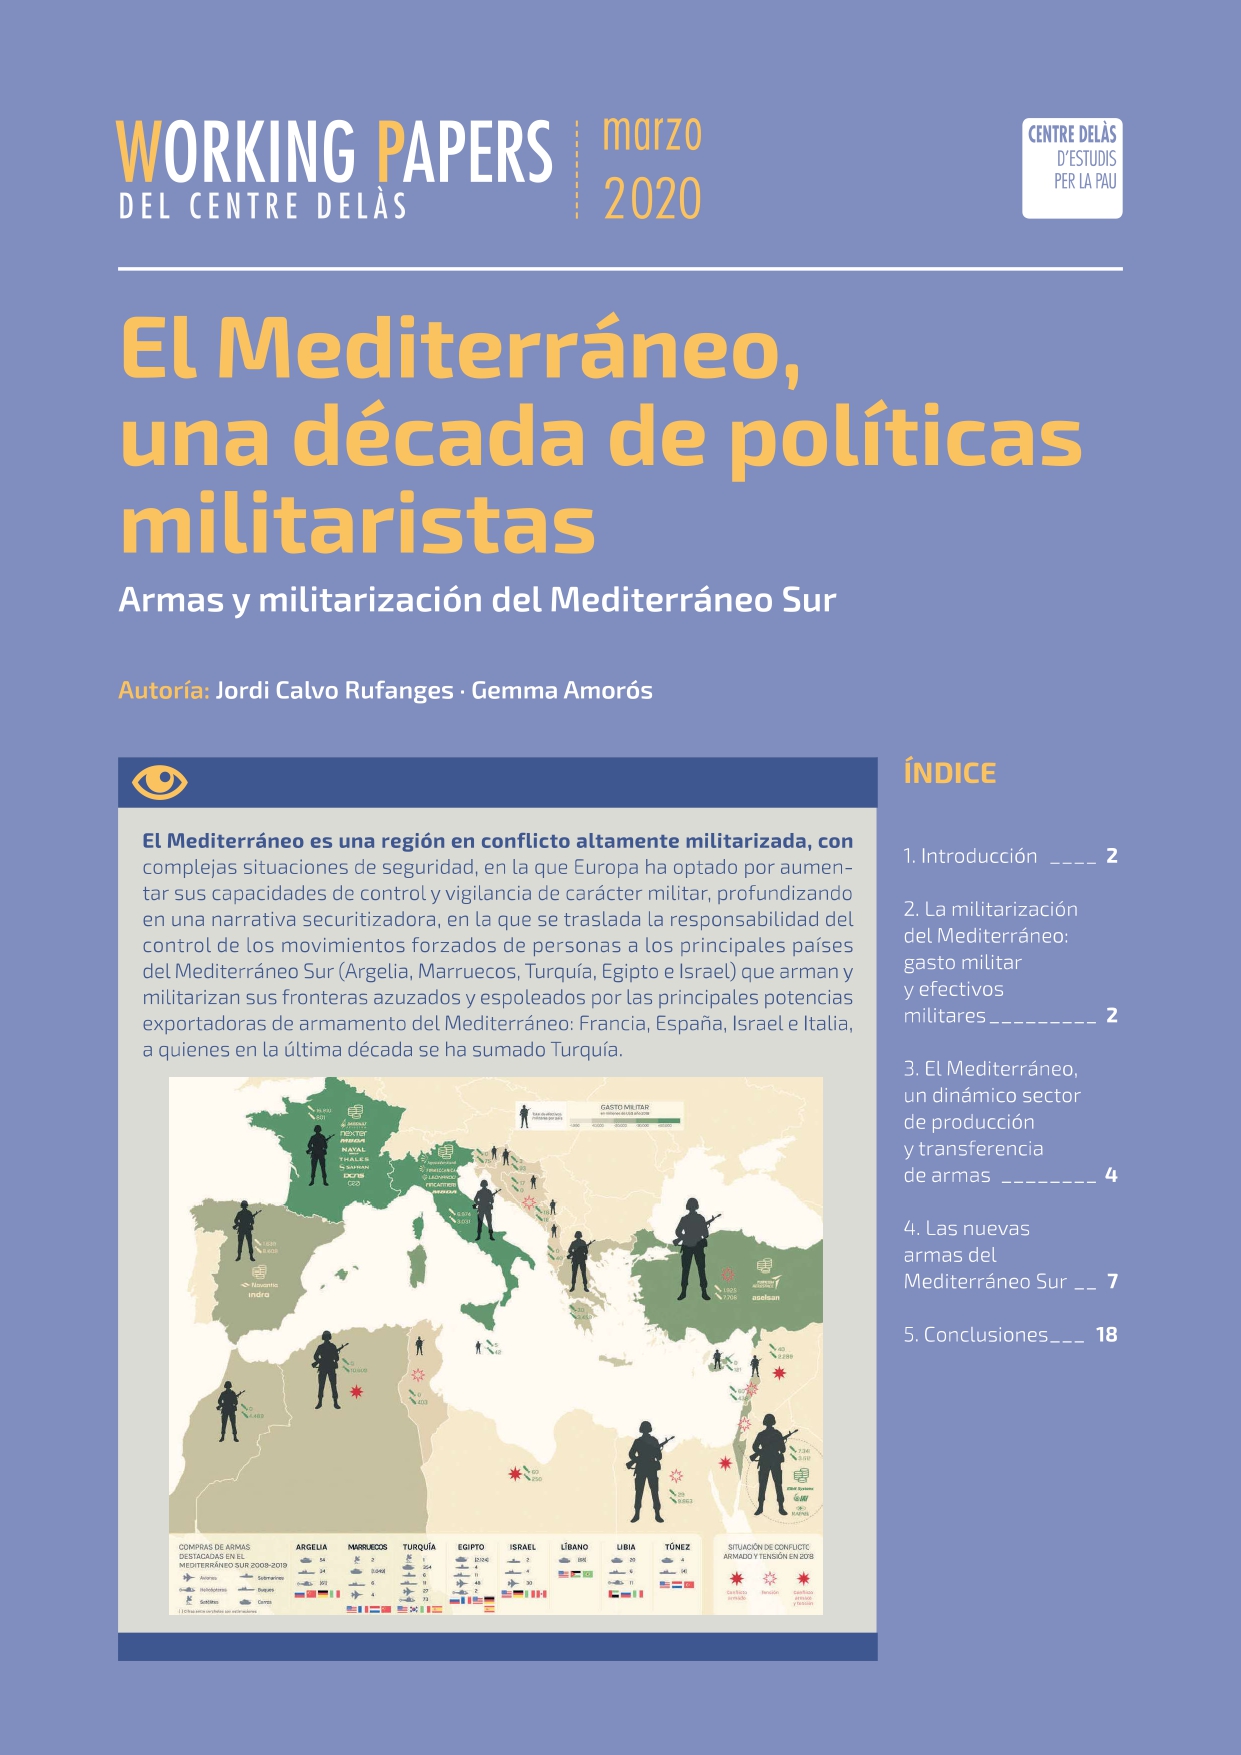 Working Paper «El Mediterráneo, una década de políticas militaristas. Armas y militarización del mediterráneo Sur»